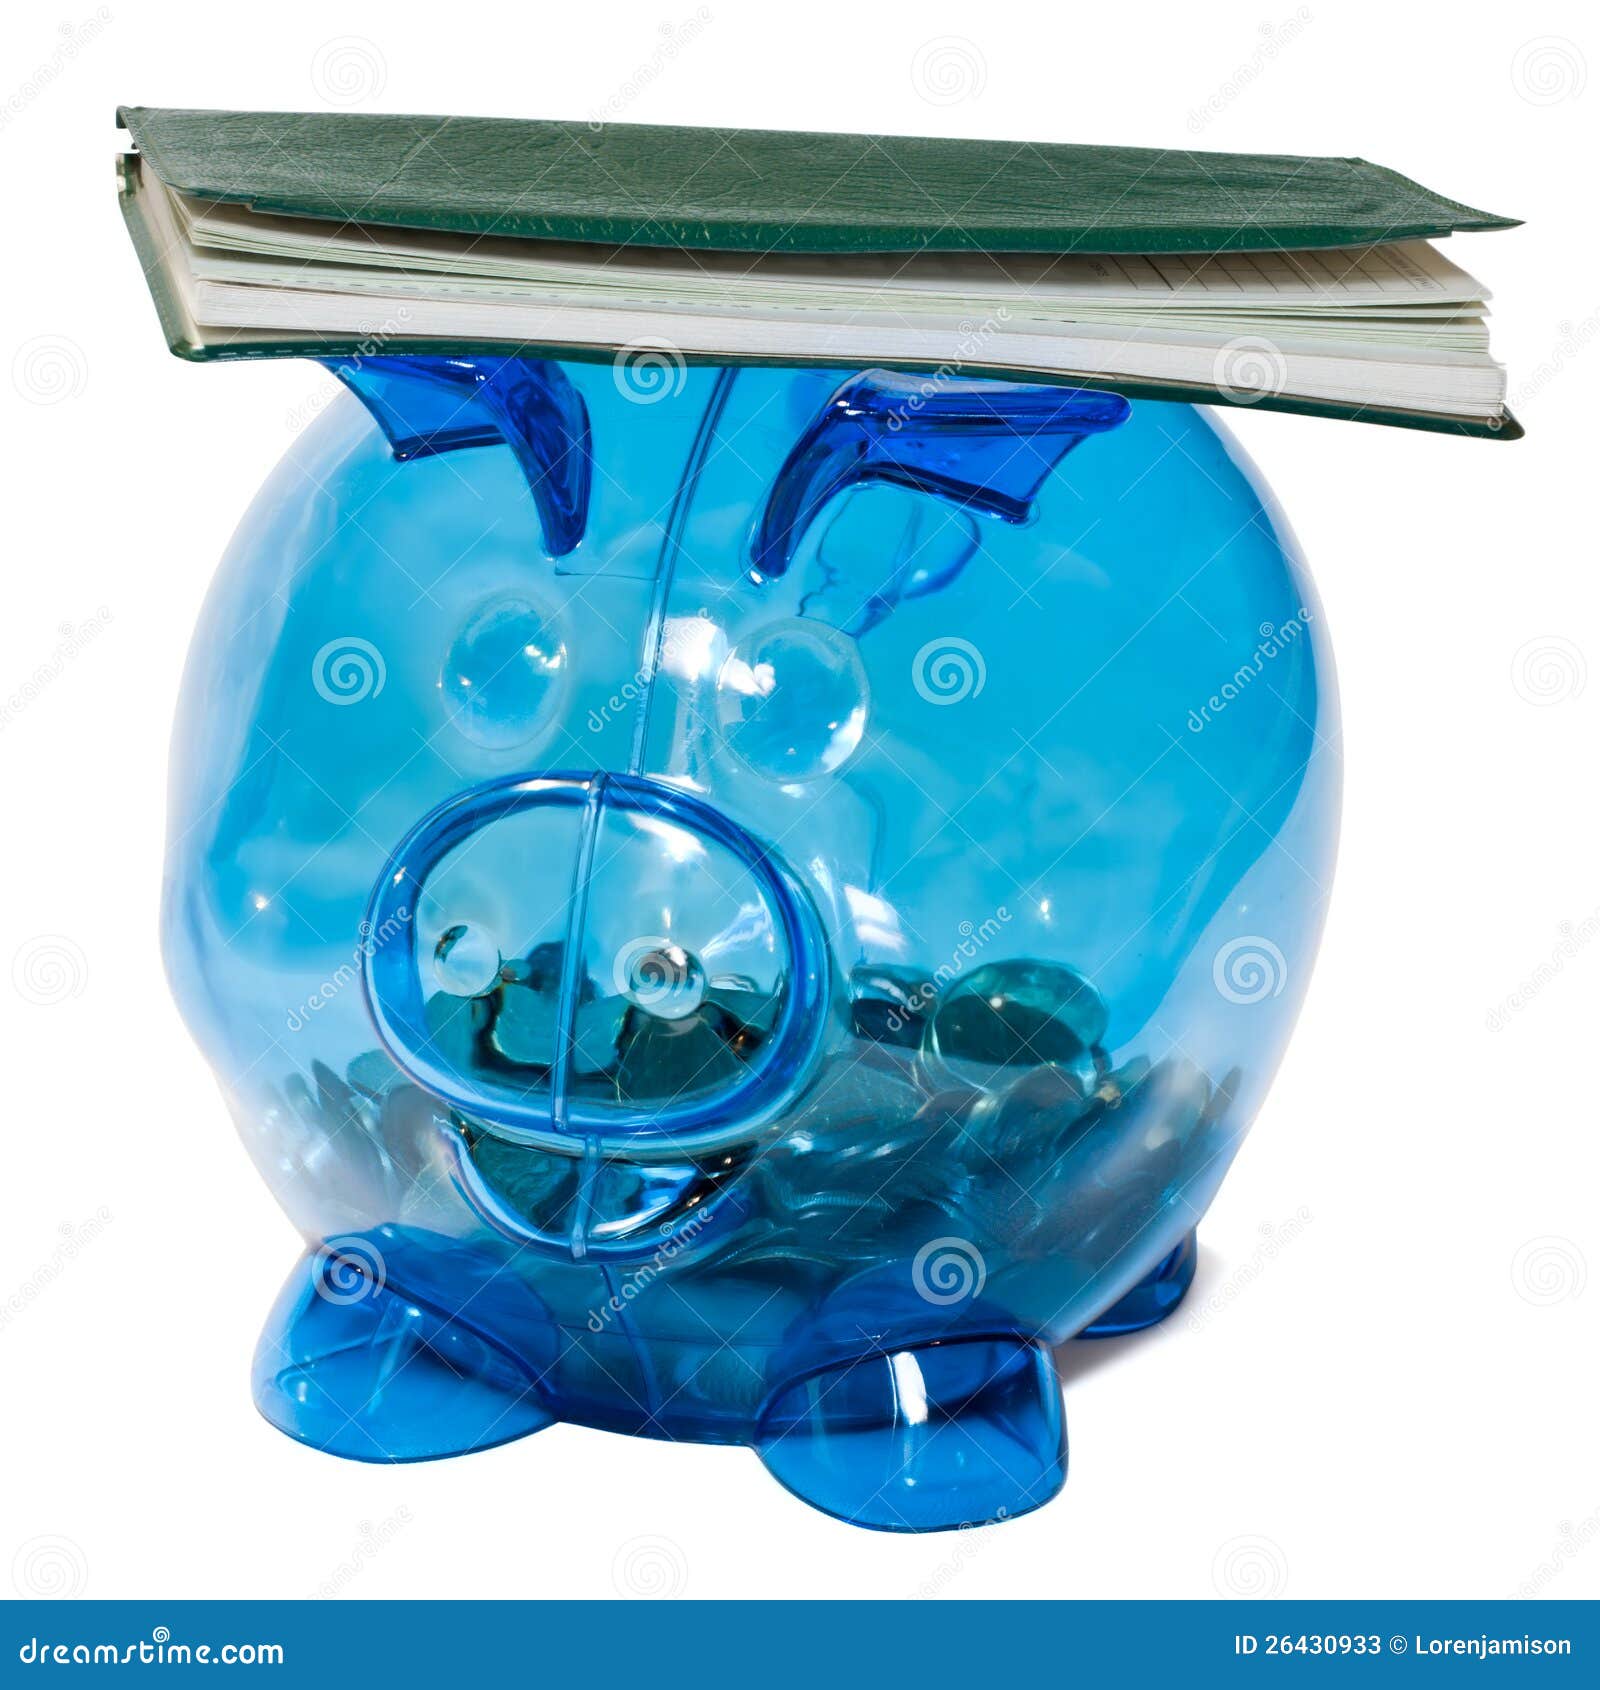 Livro de cheques balançado em um banco piggy. Um banco piggy com as moedas nele que balança um livro de cheques, isolado toda em um fundo branco